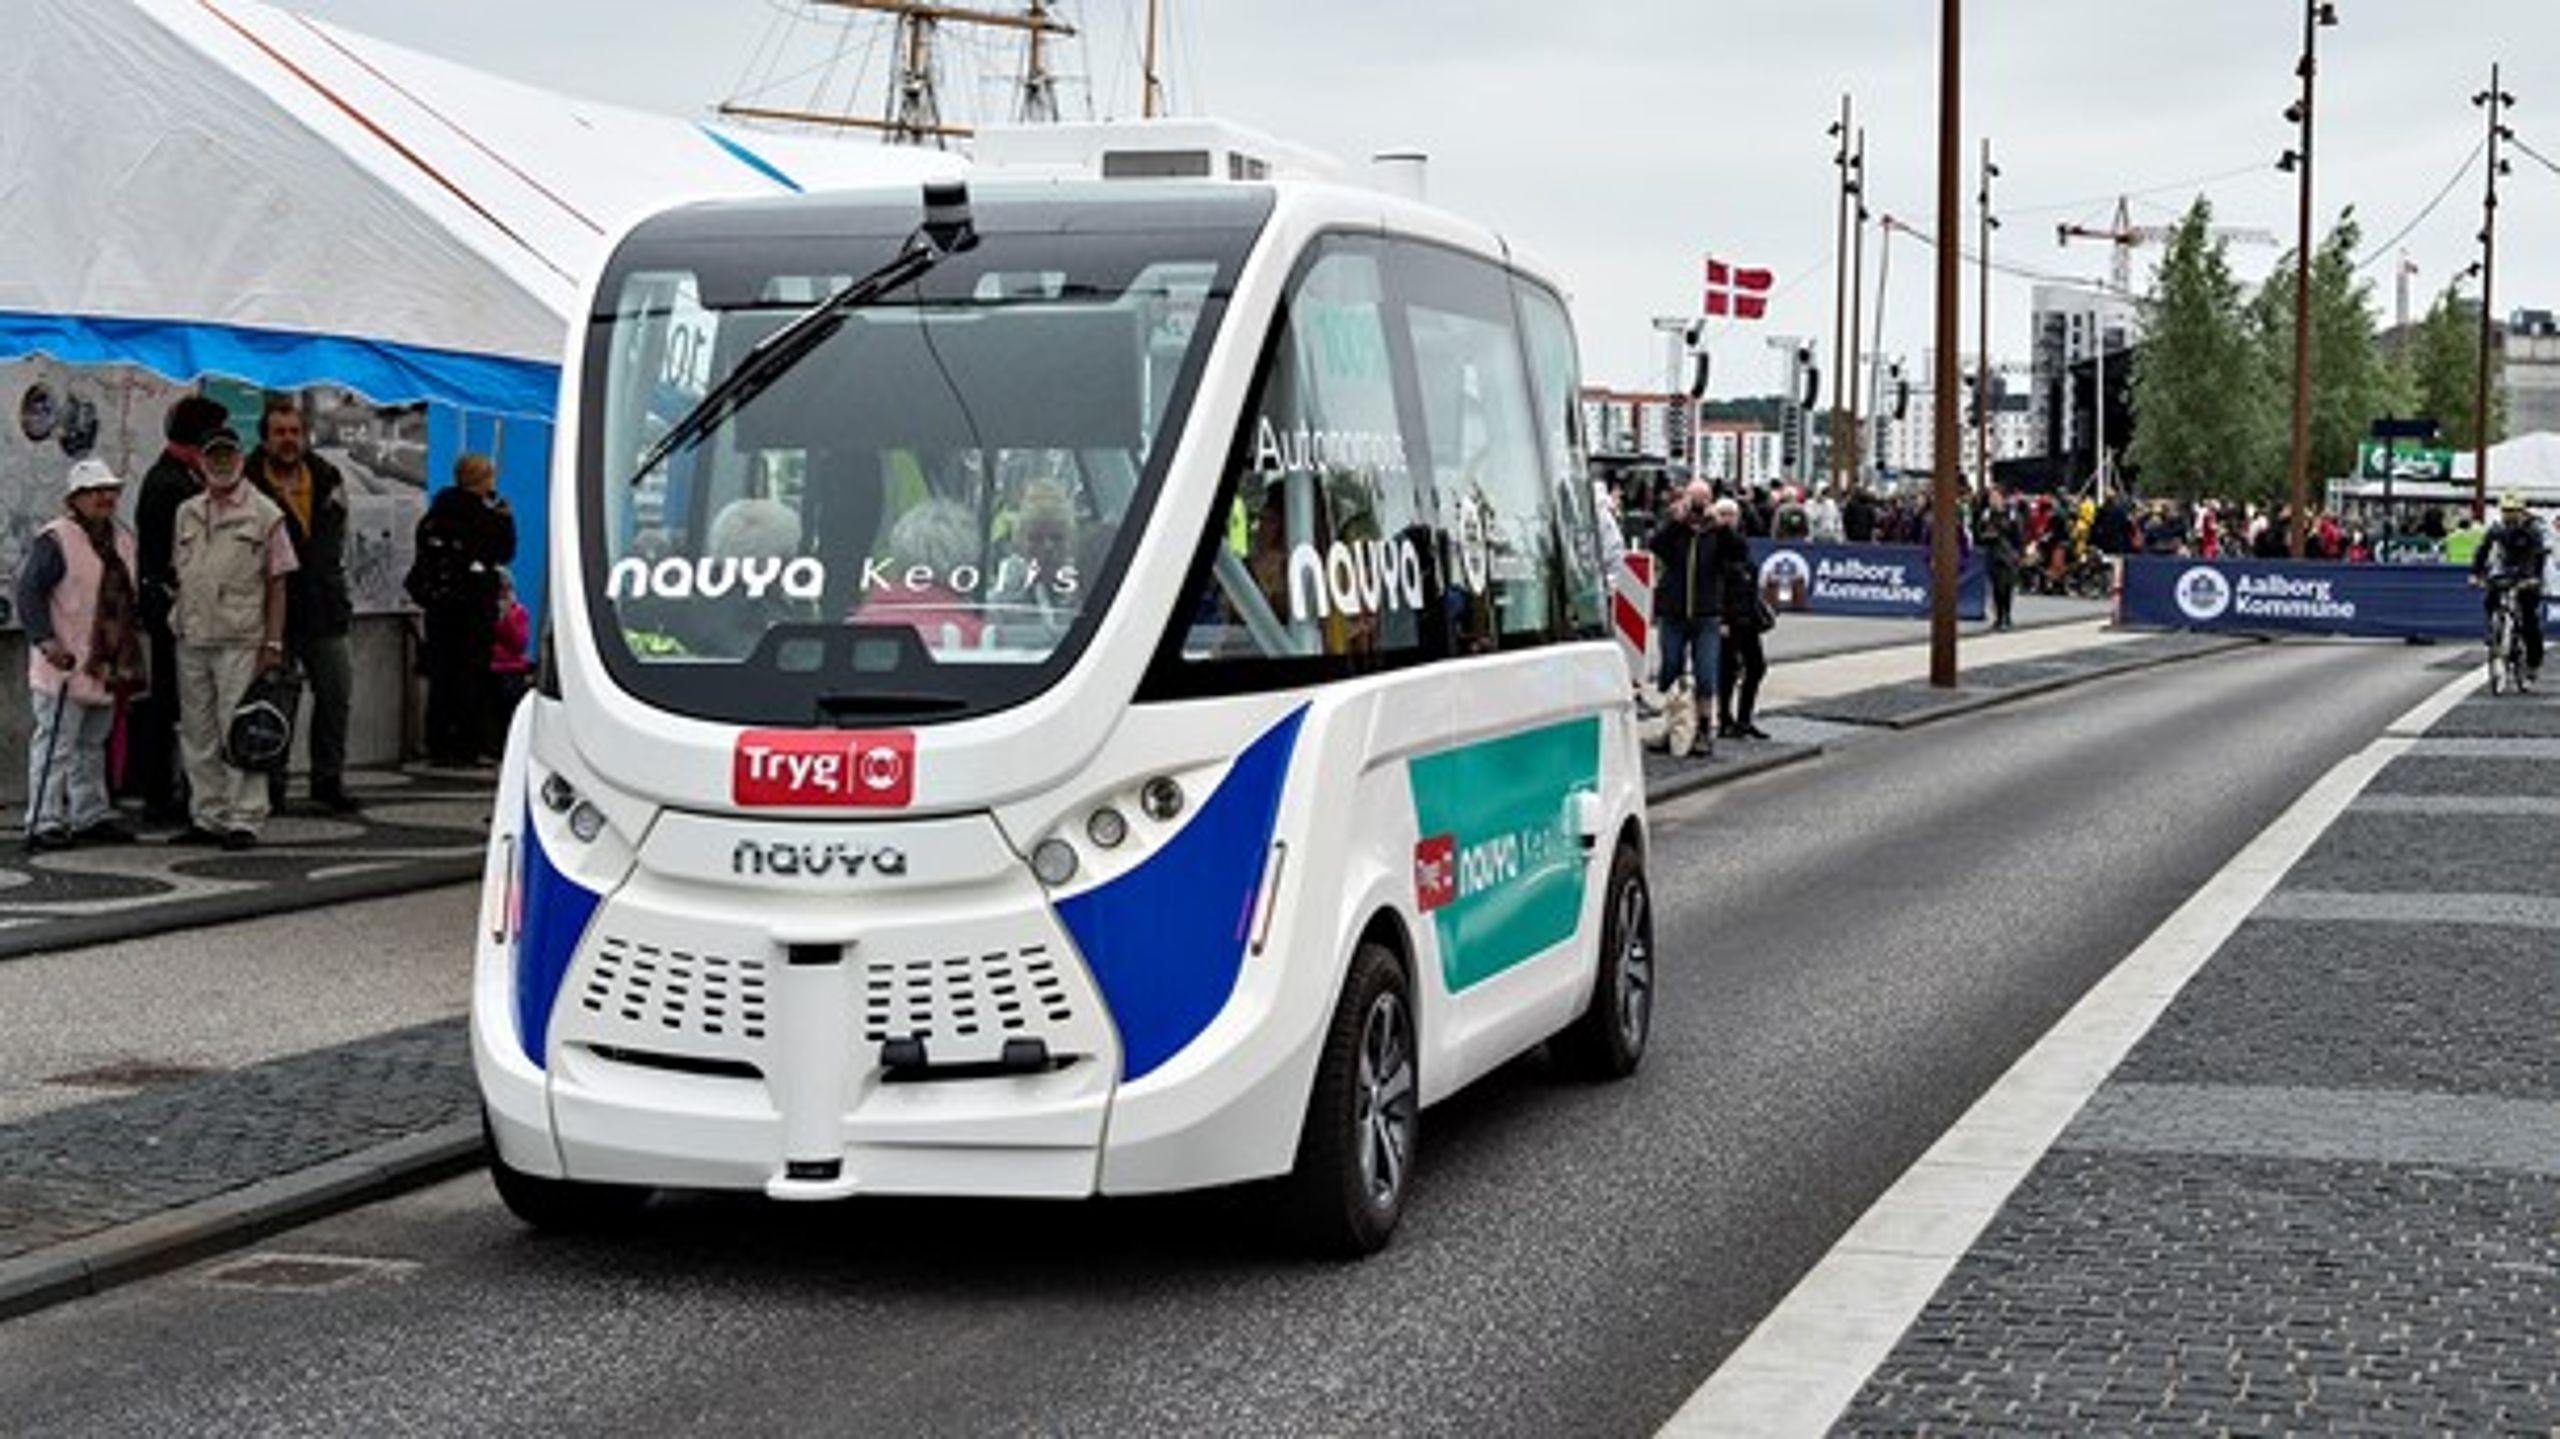 Teknologien er allerede på vej ind i byerne med blandt andet førerløse busser i Aalborg. Men hvilken rolle spiller teknologien egentlig i fremtidens byer?